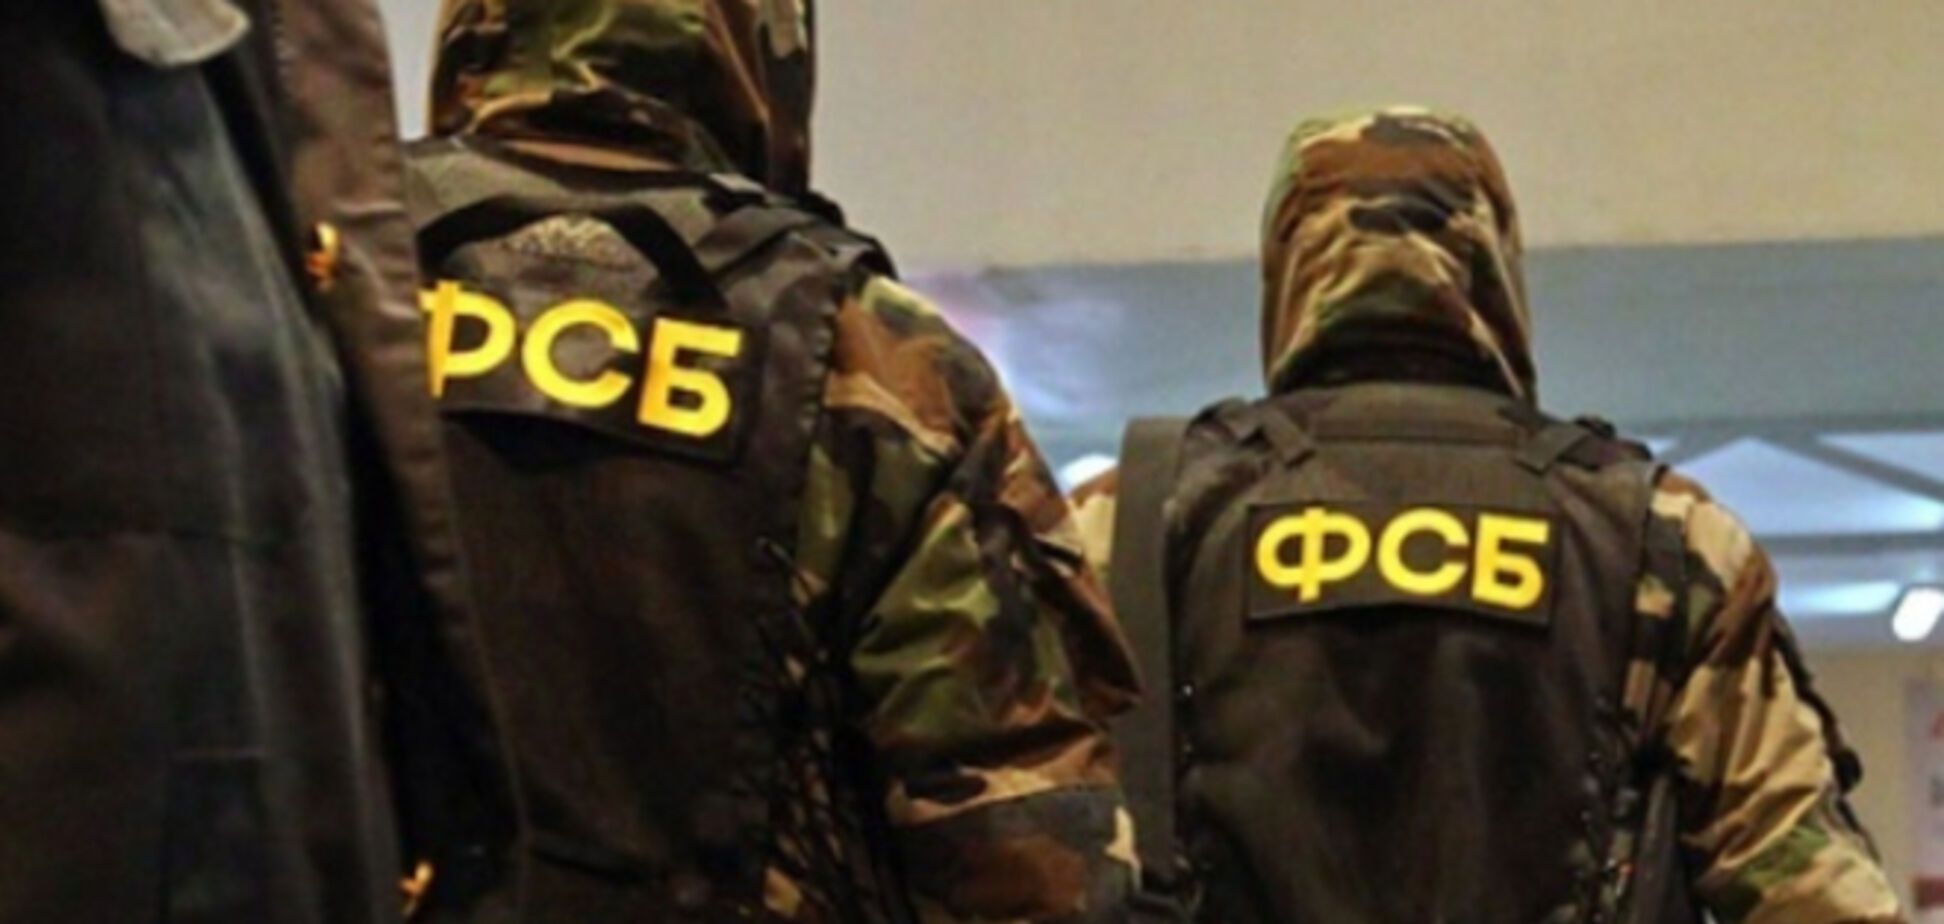 ФСБ похитила троих жителей Прикарпатья, отправив их в форме 'ДНР' под Дебальцево - СМИ